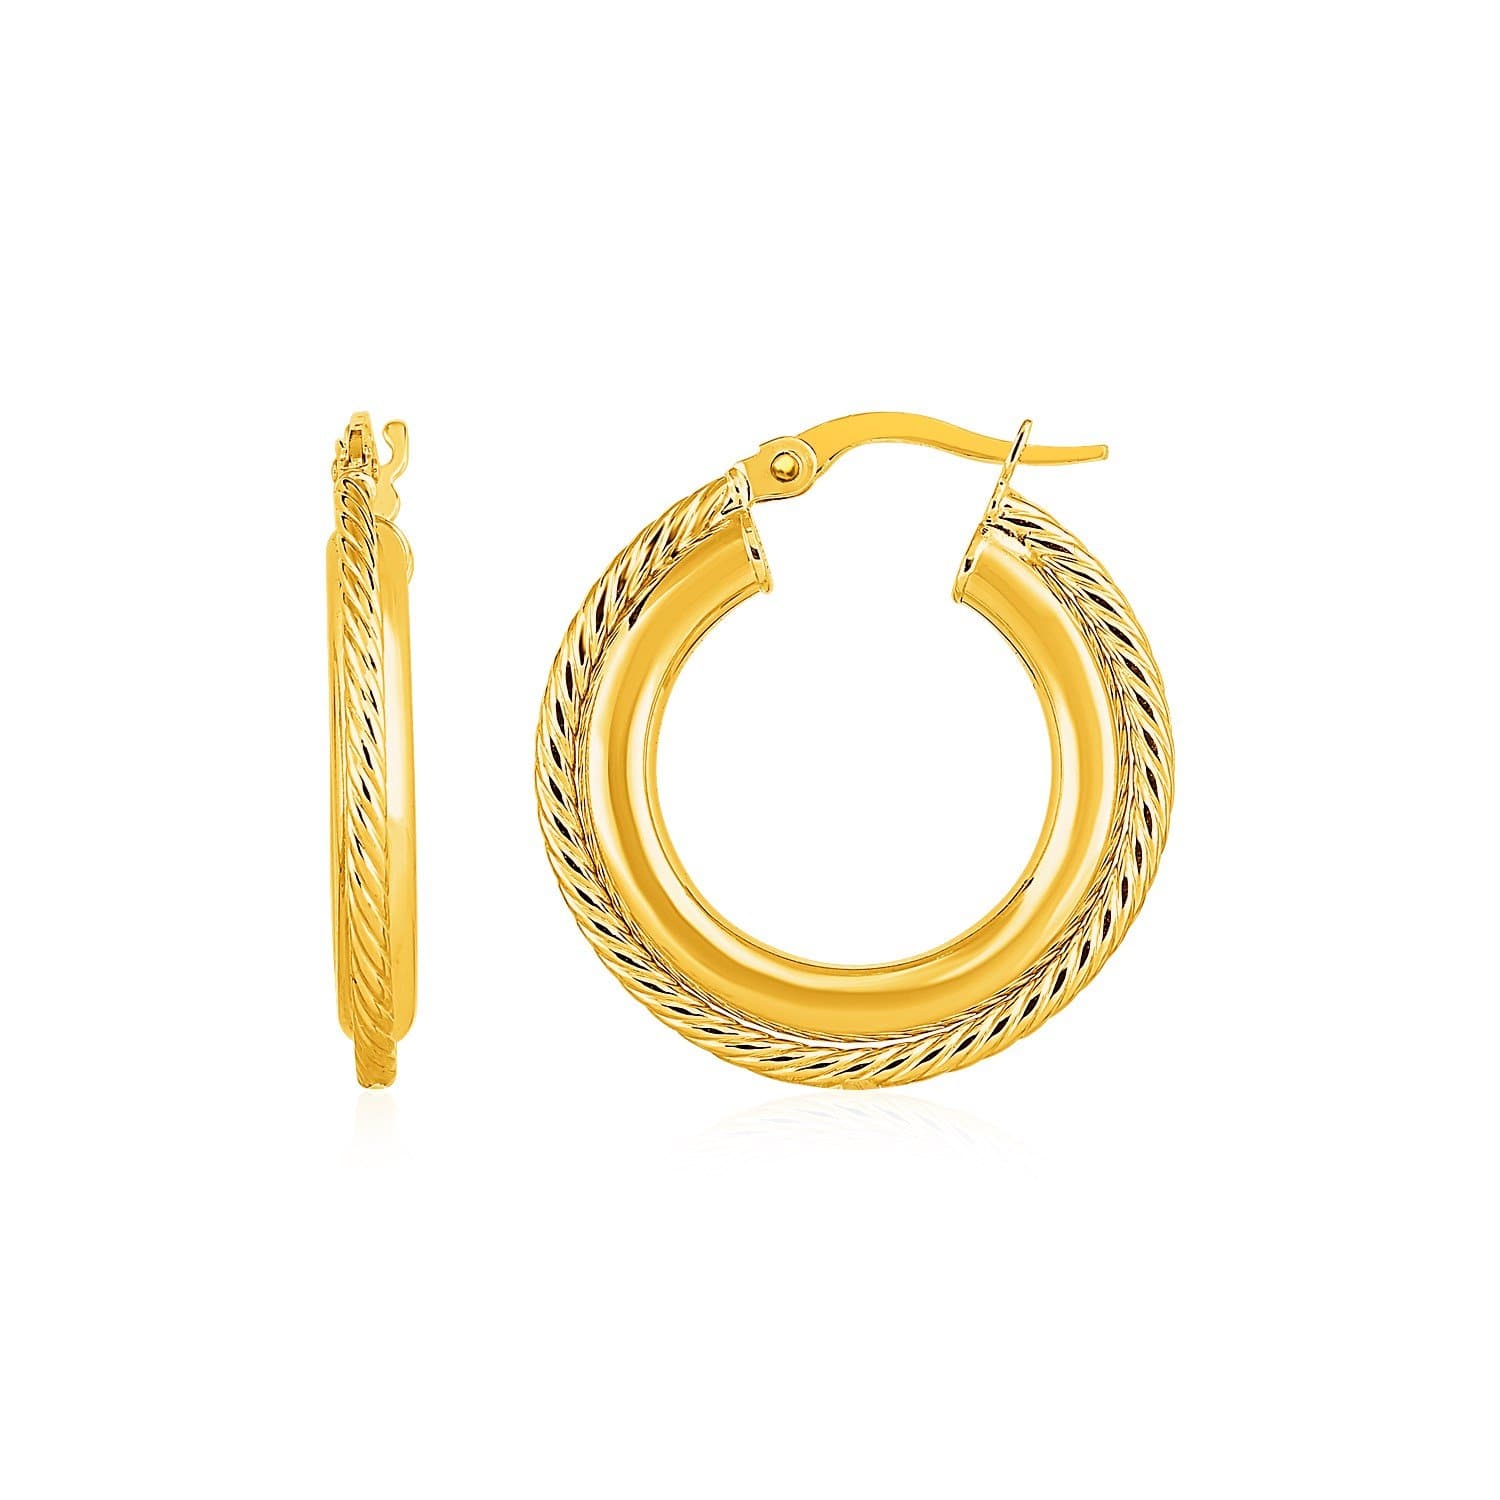 Rope Texture Hoop Earrings in 14k Yellow Gold